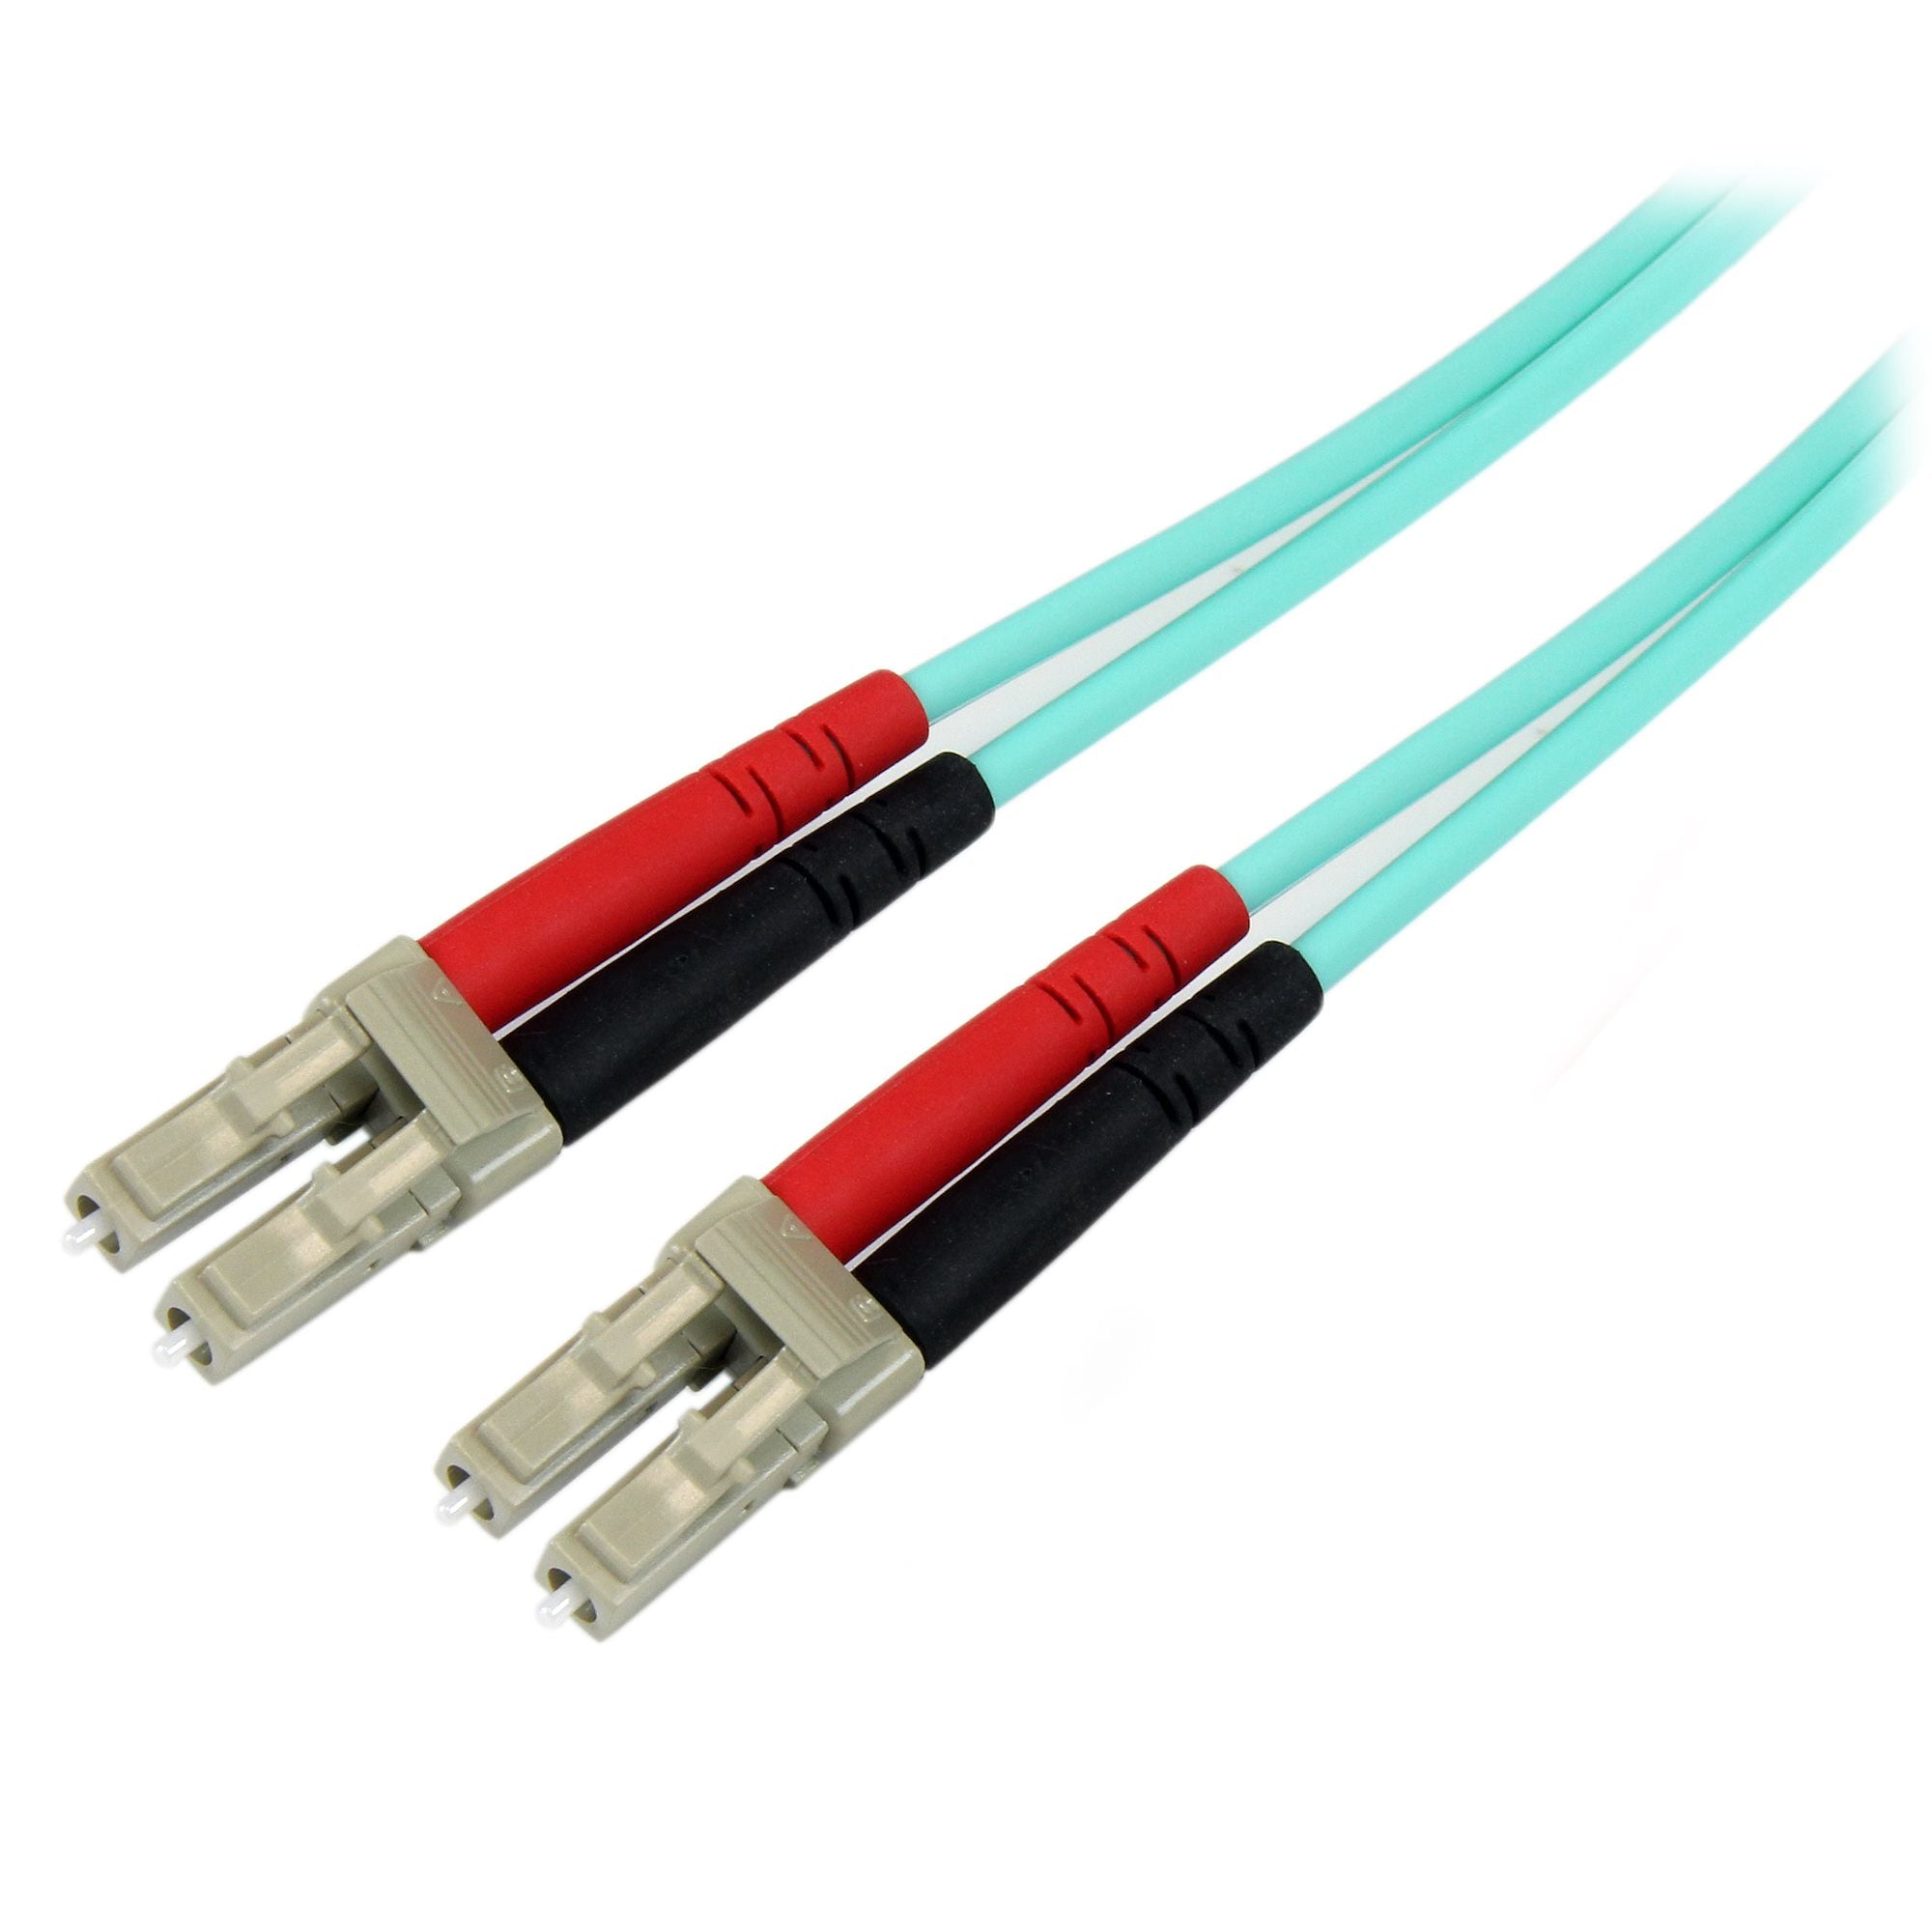 StarTech.com Fiber Optic Cable - 10 Gb Aqua - Multimode Duplex 50/125 - LSZH - LC/LC - 10 m~10m (30ft) LC/UPC to LC/UPC OM3 Multimode Fiber Optic Cable, Full Duplex 50/125µm Zipcord Fiber, 100G Networks, LOMMF/VCSEL, <0.3dB Low Insertion Loss, LSZH Fiber